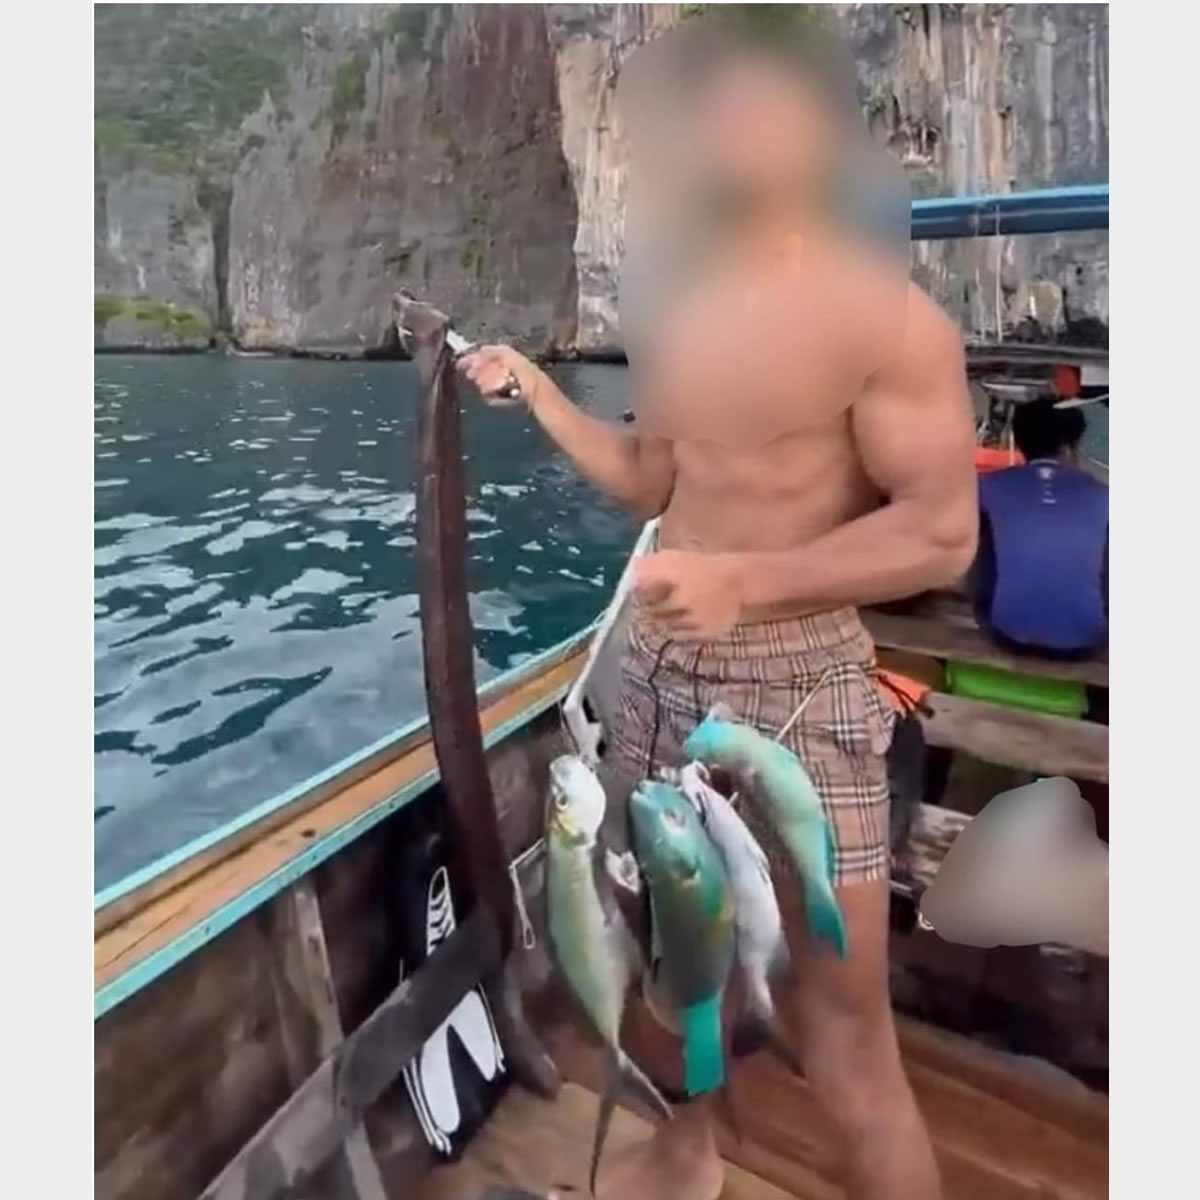 ピピ・レイ島で魚を捕った外国人男性、TikTok投稿で批判殺到